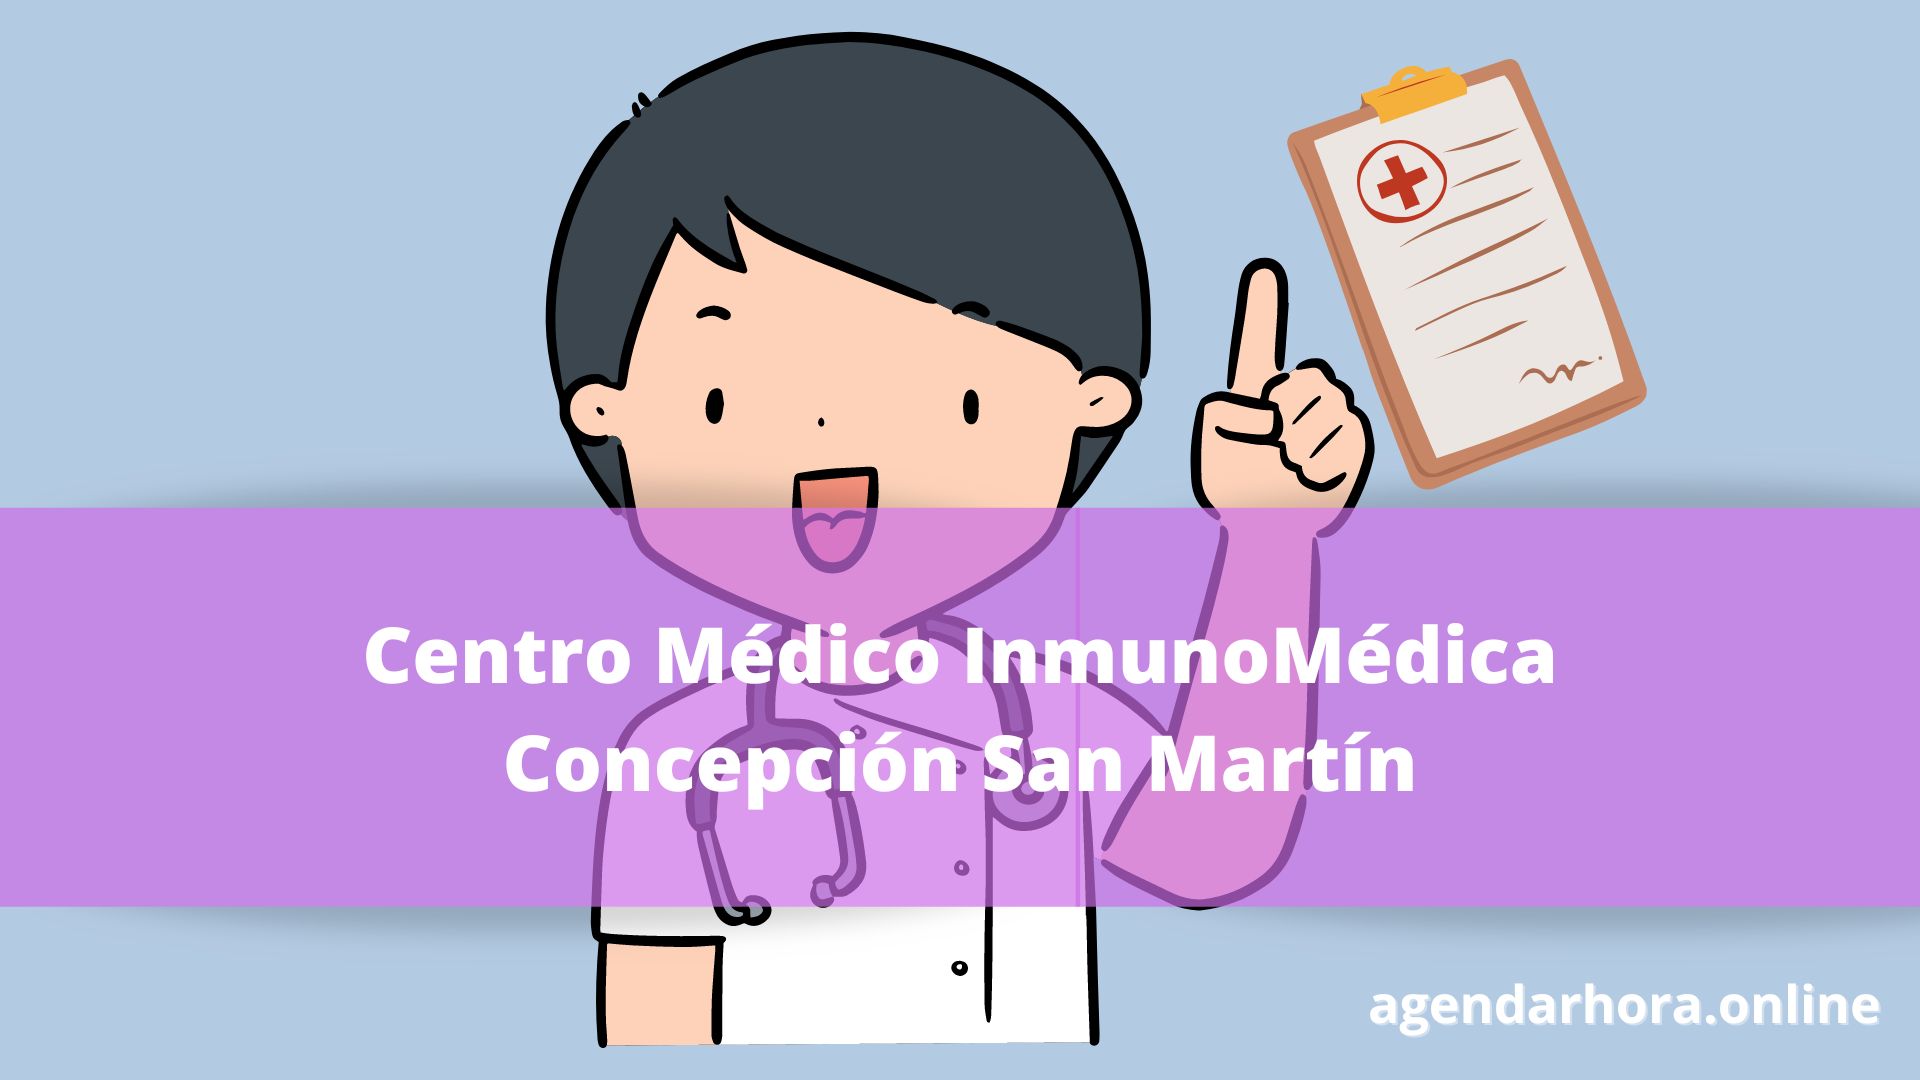 Centro Médico InmunoMédica Concepción San Martín